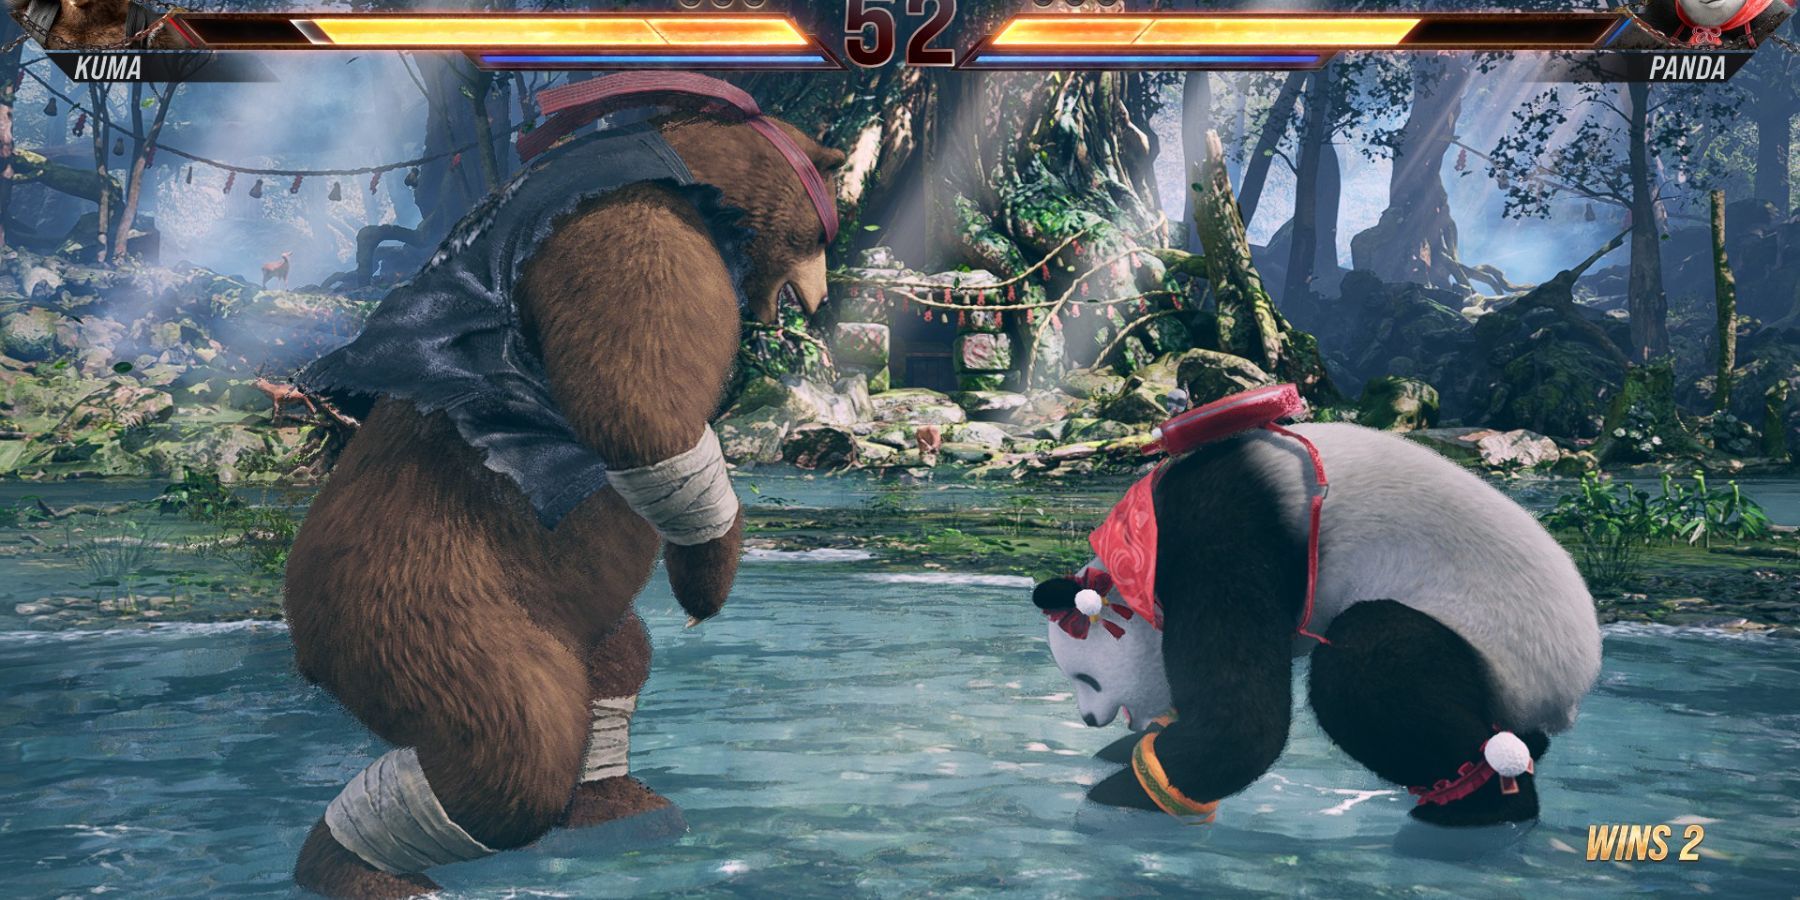 Kuma versus Panda